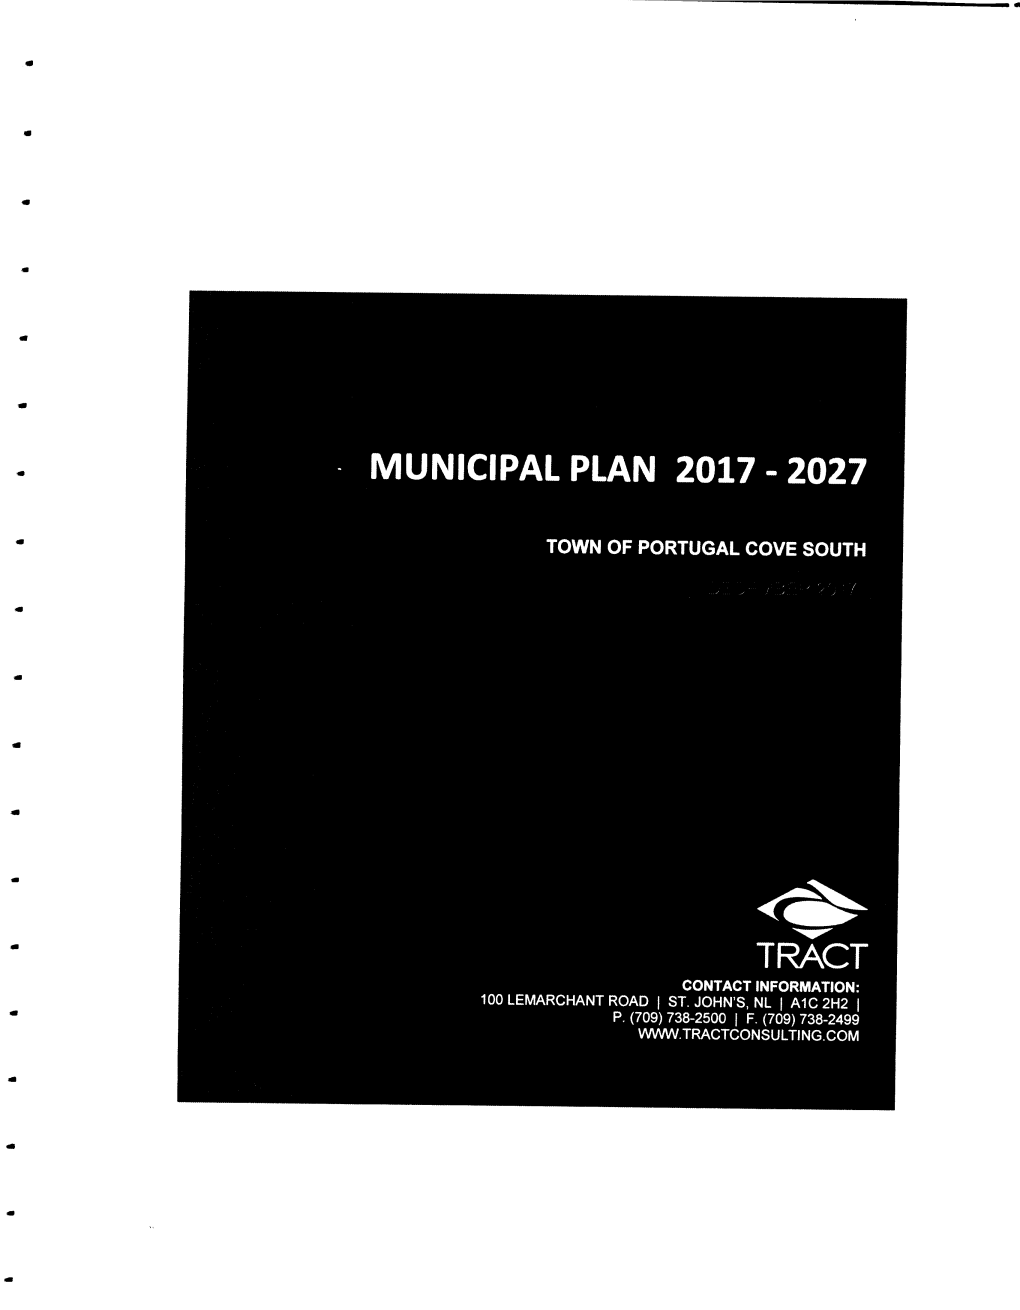 Municipal Plan 2017 - 2027